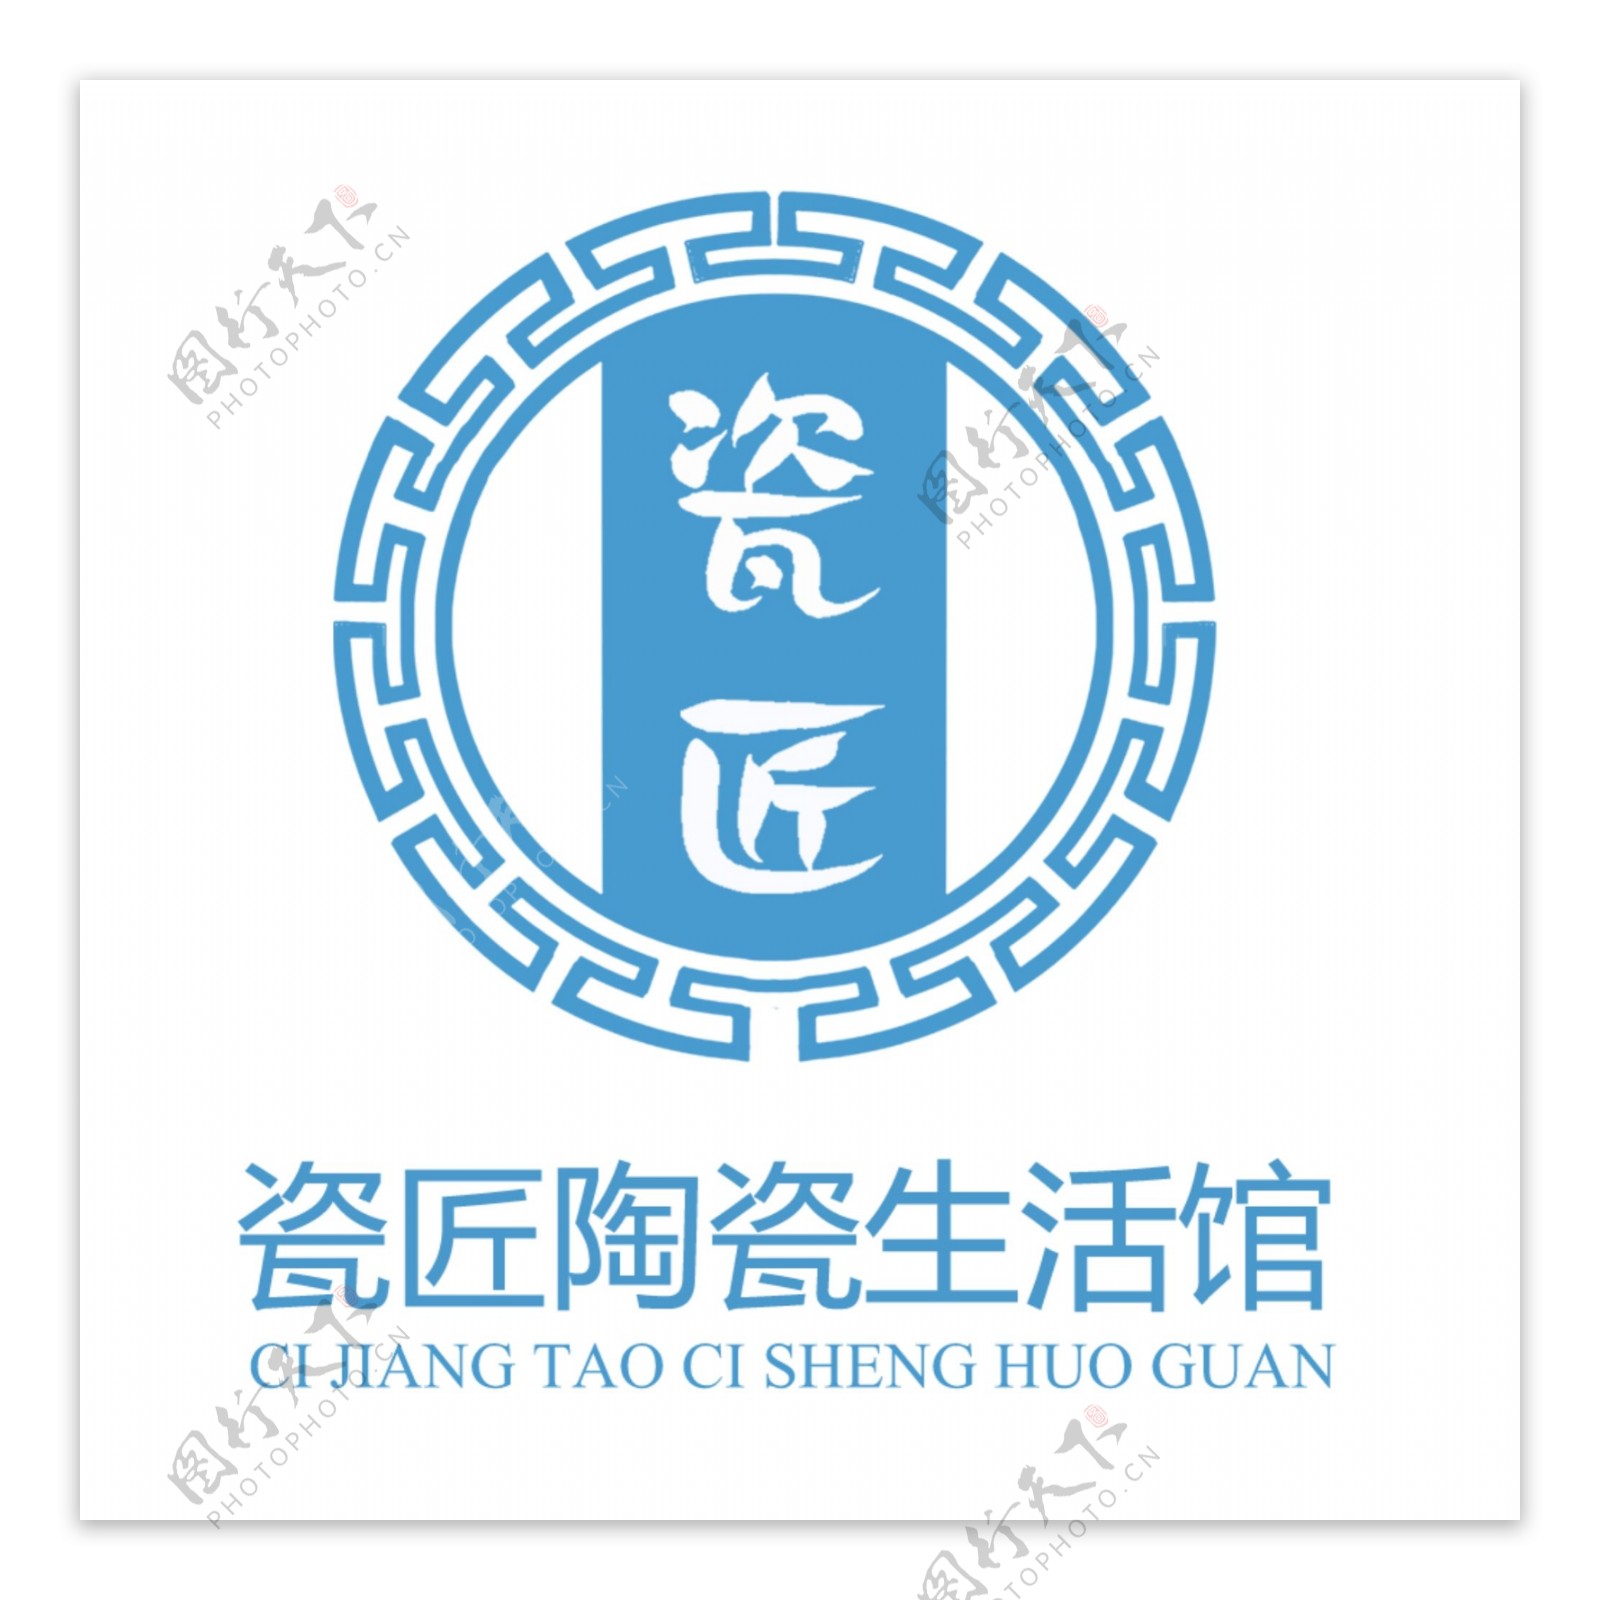 瓷匠陶瓷生活馆标志logo